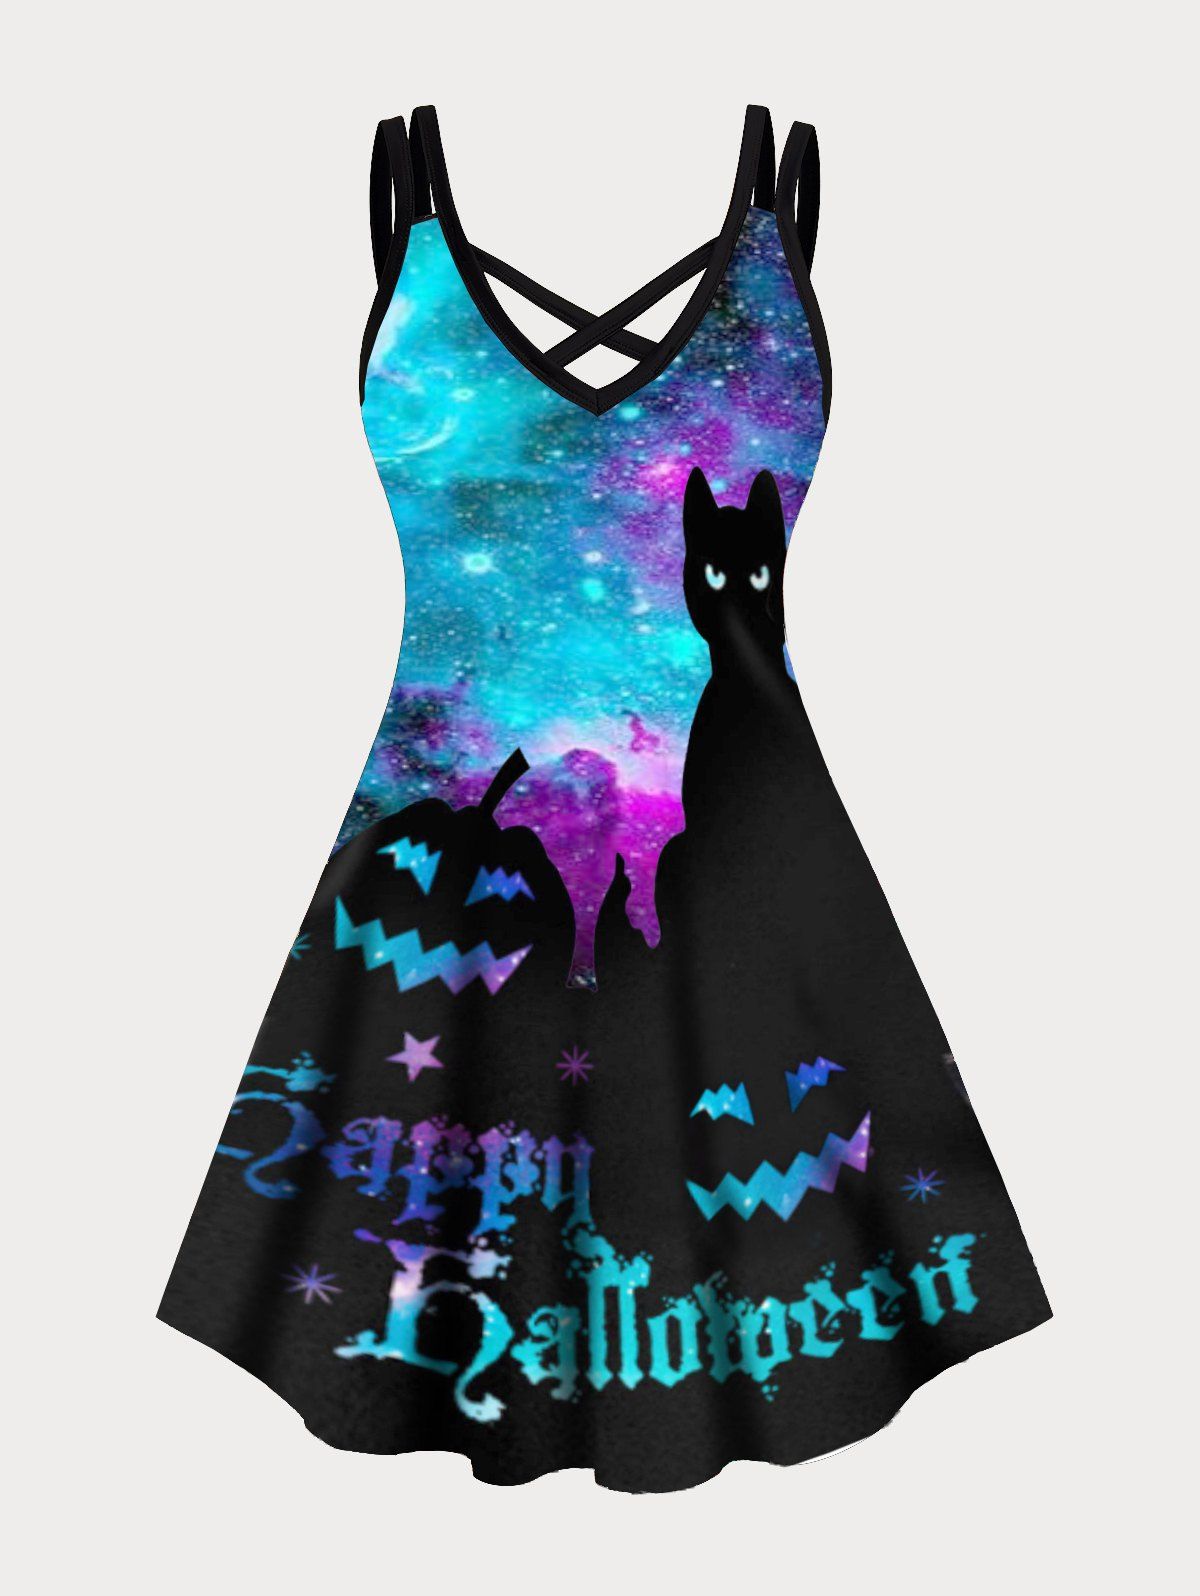 Happy Halloween Black Cat Pumpkin Galaxy Print Plus Size Dress Crisscross Dual Straps Cami Mini Dress - BLUE 5XL